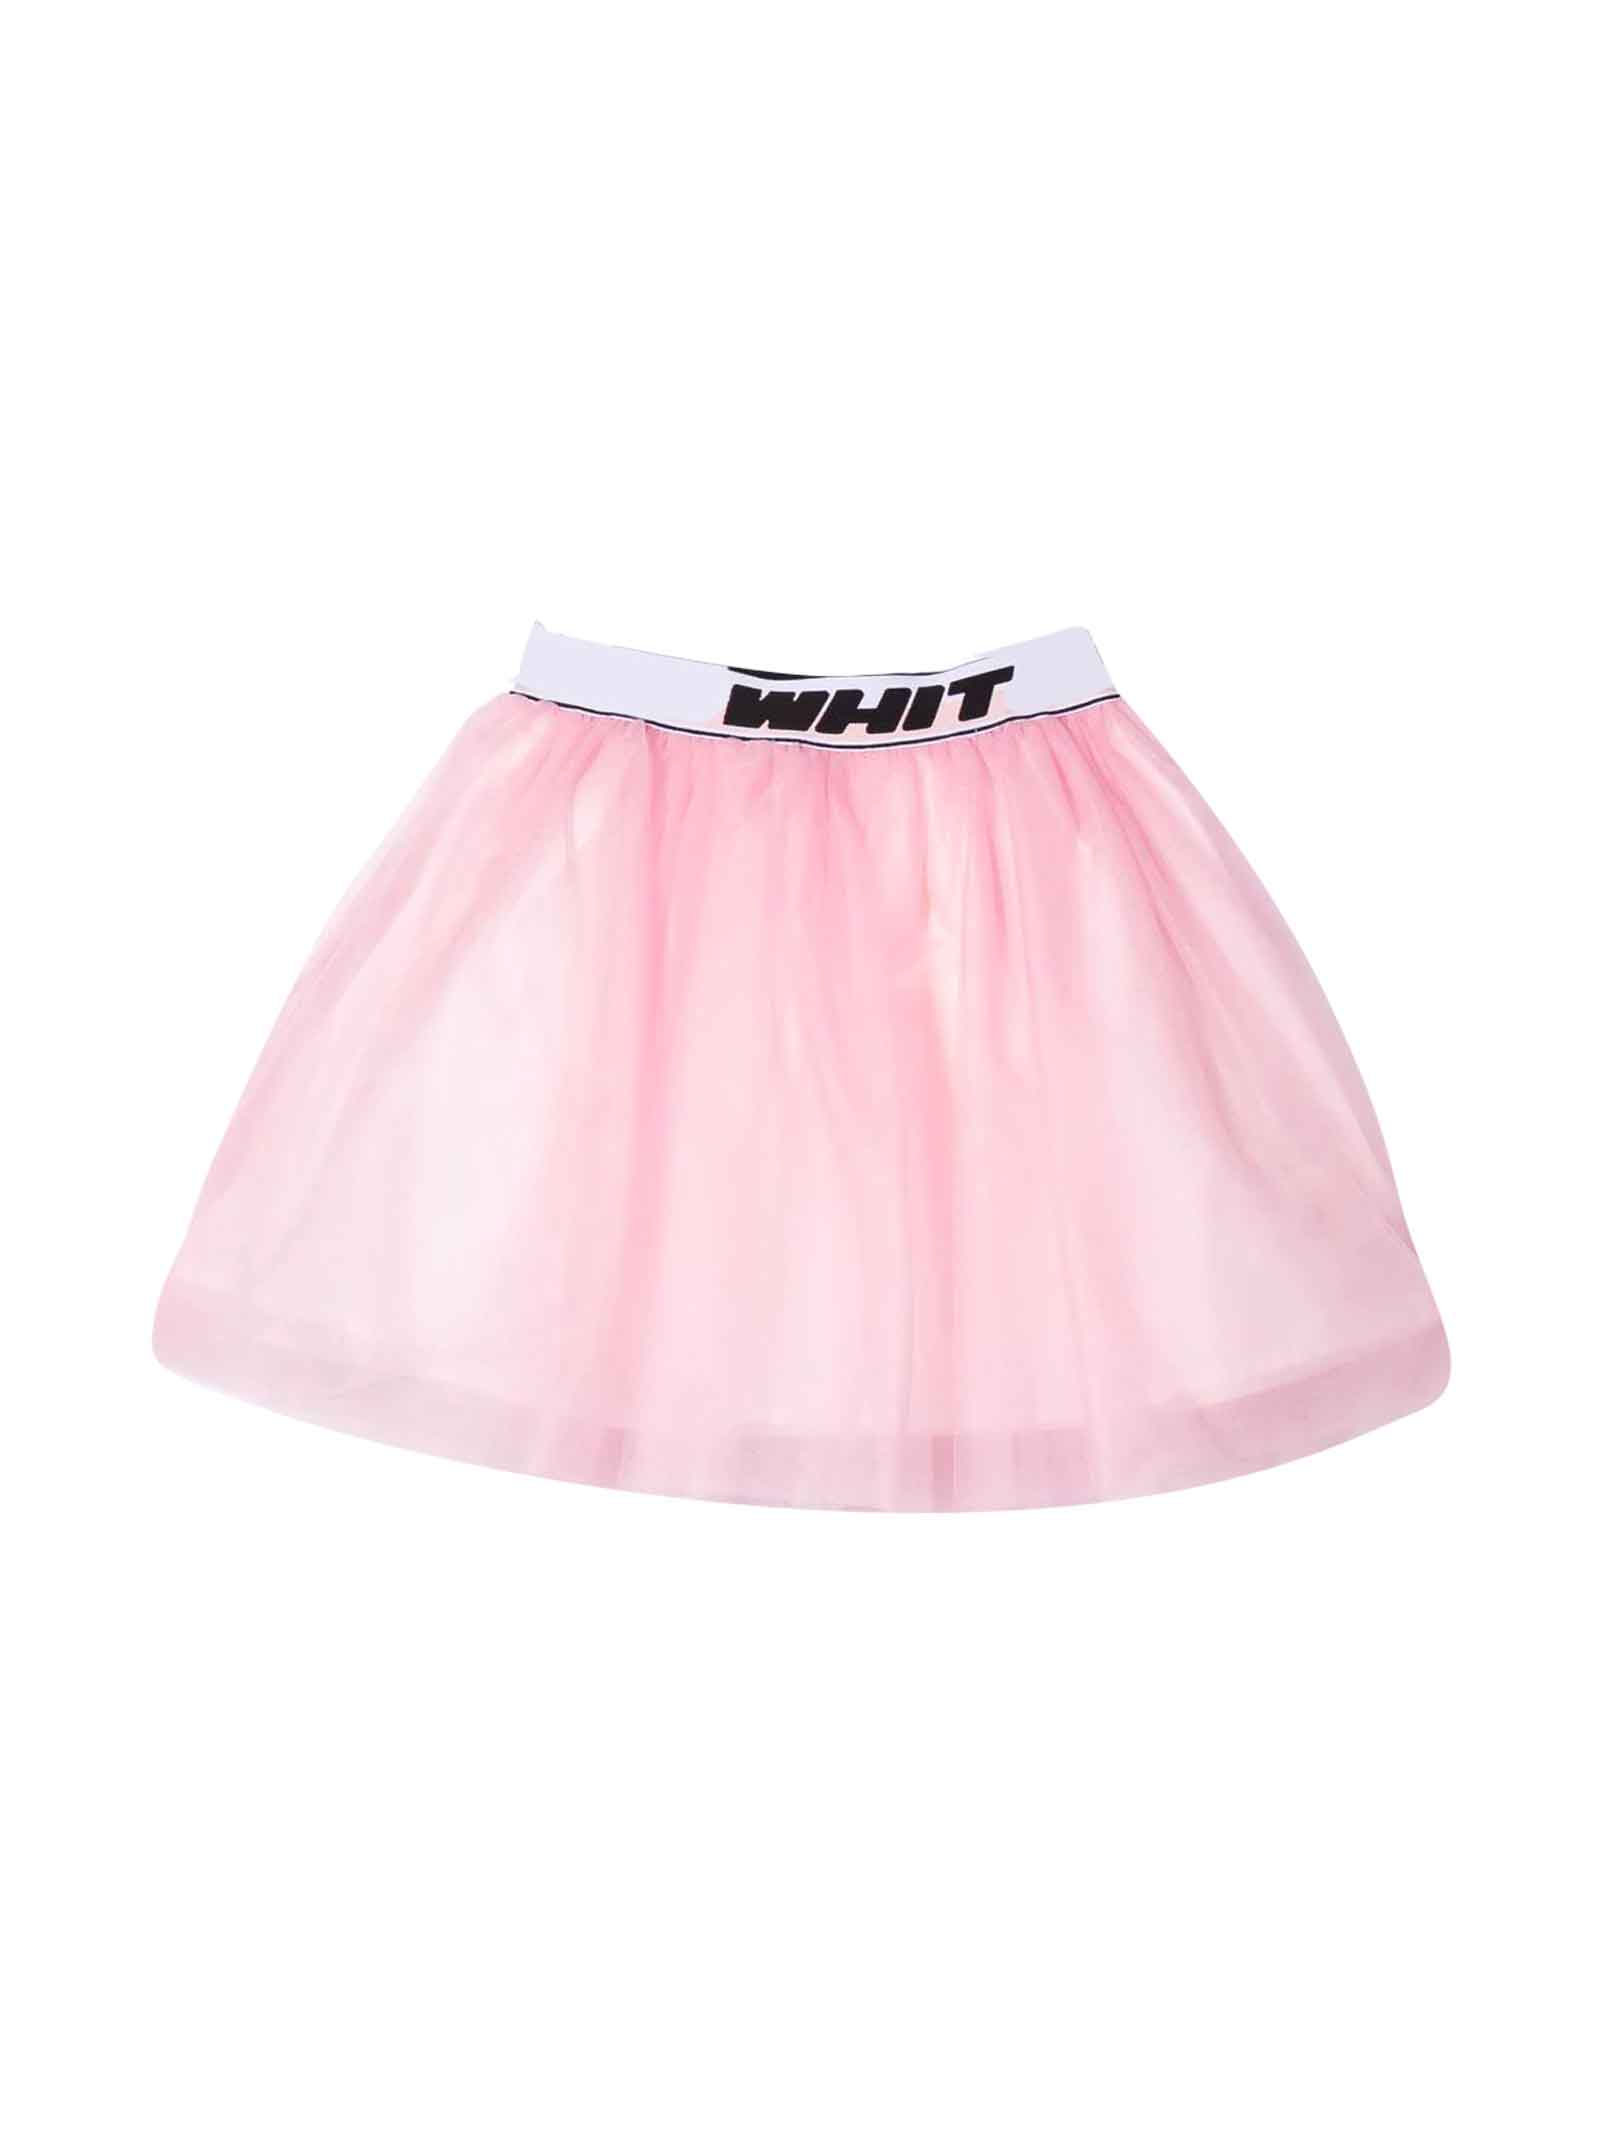 Off-White Pink Mini Skirt Girl